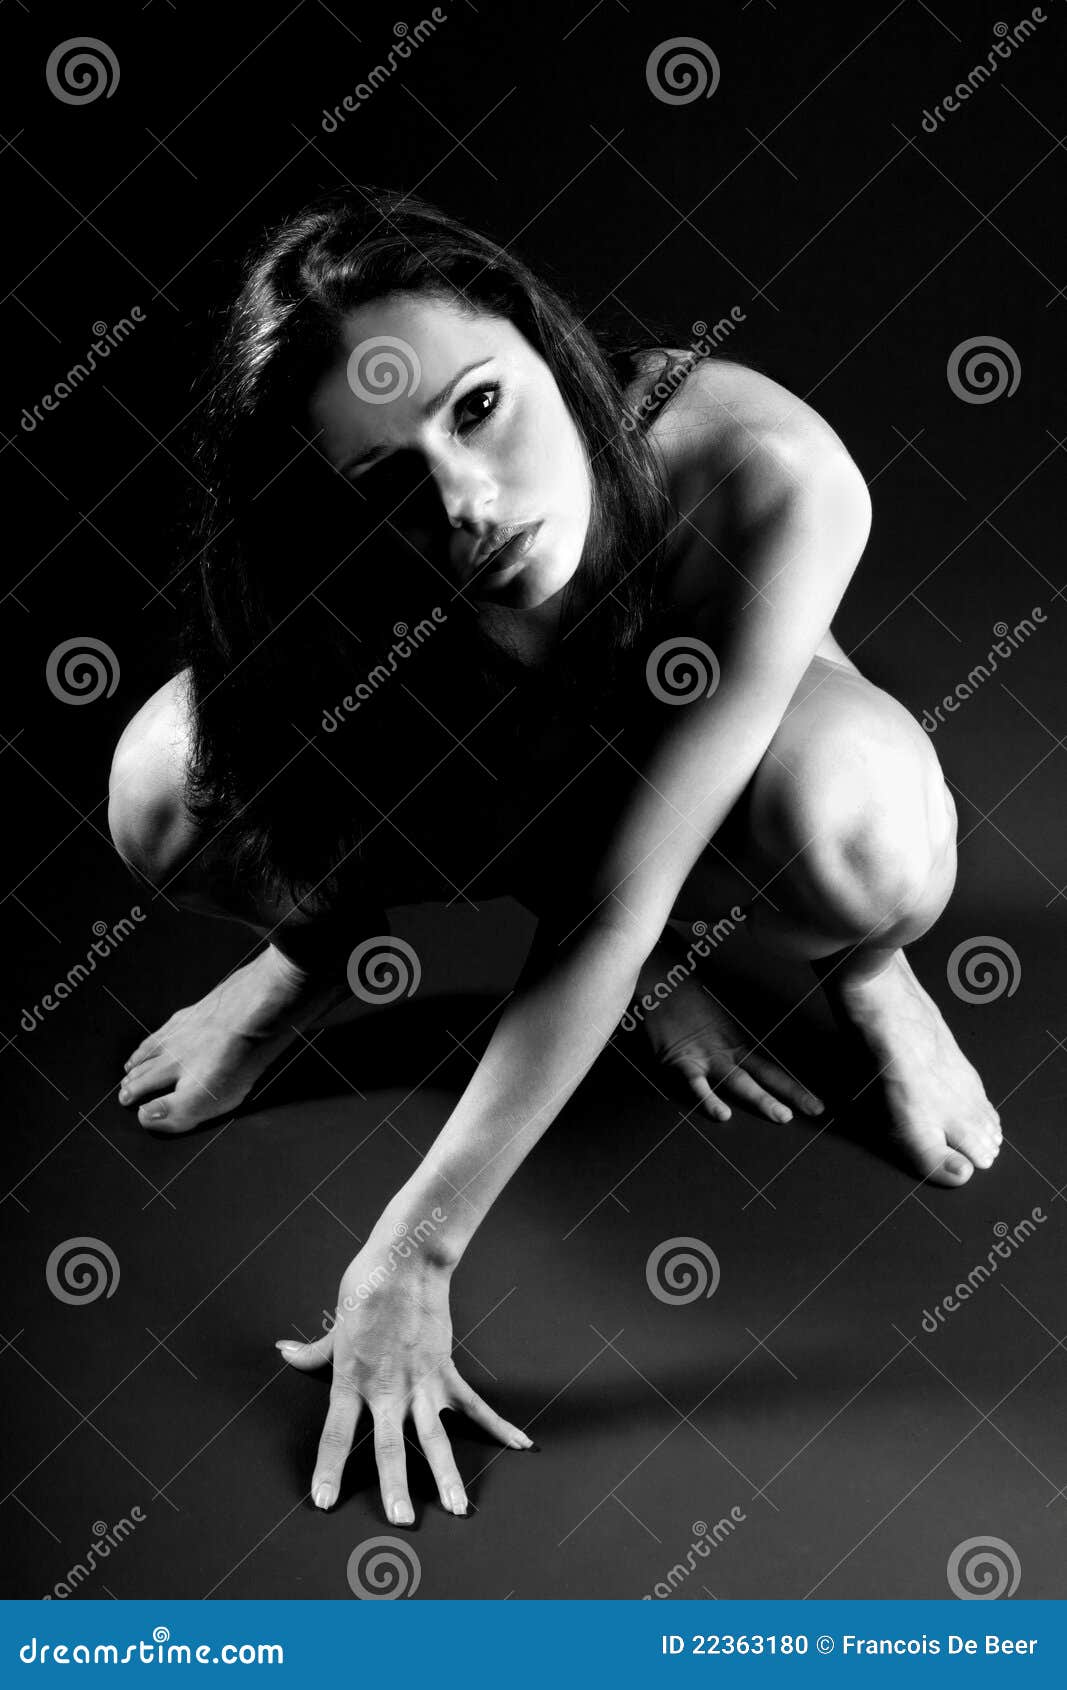 woman crouching